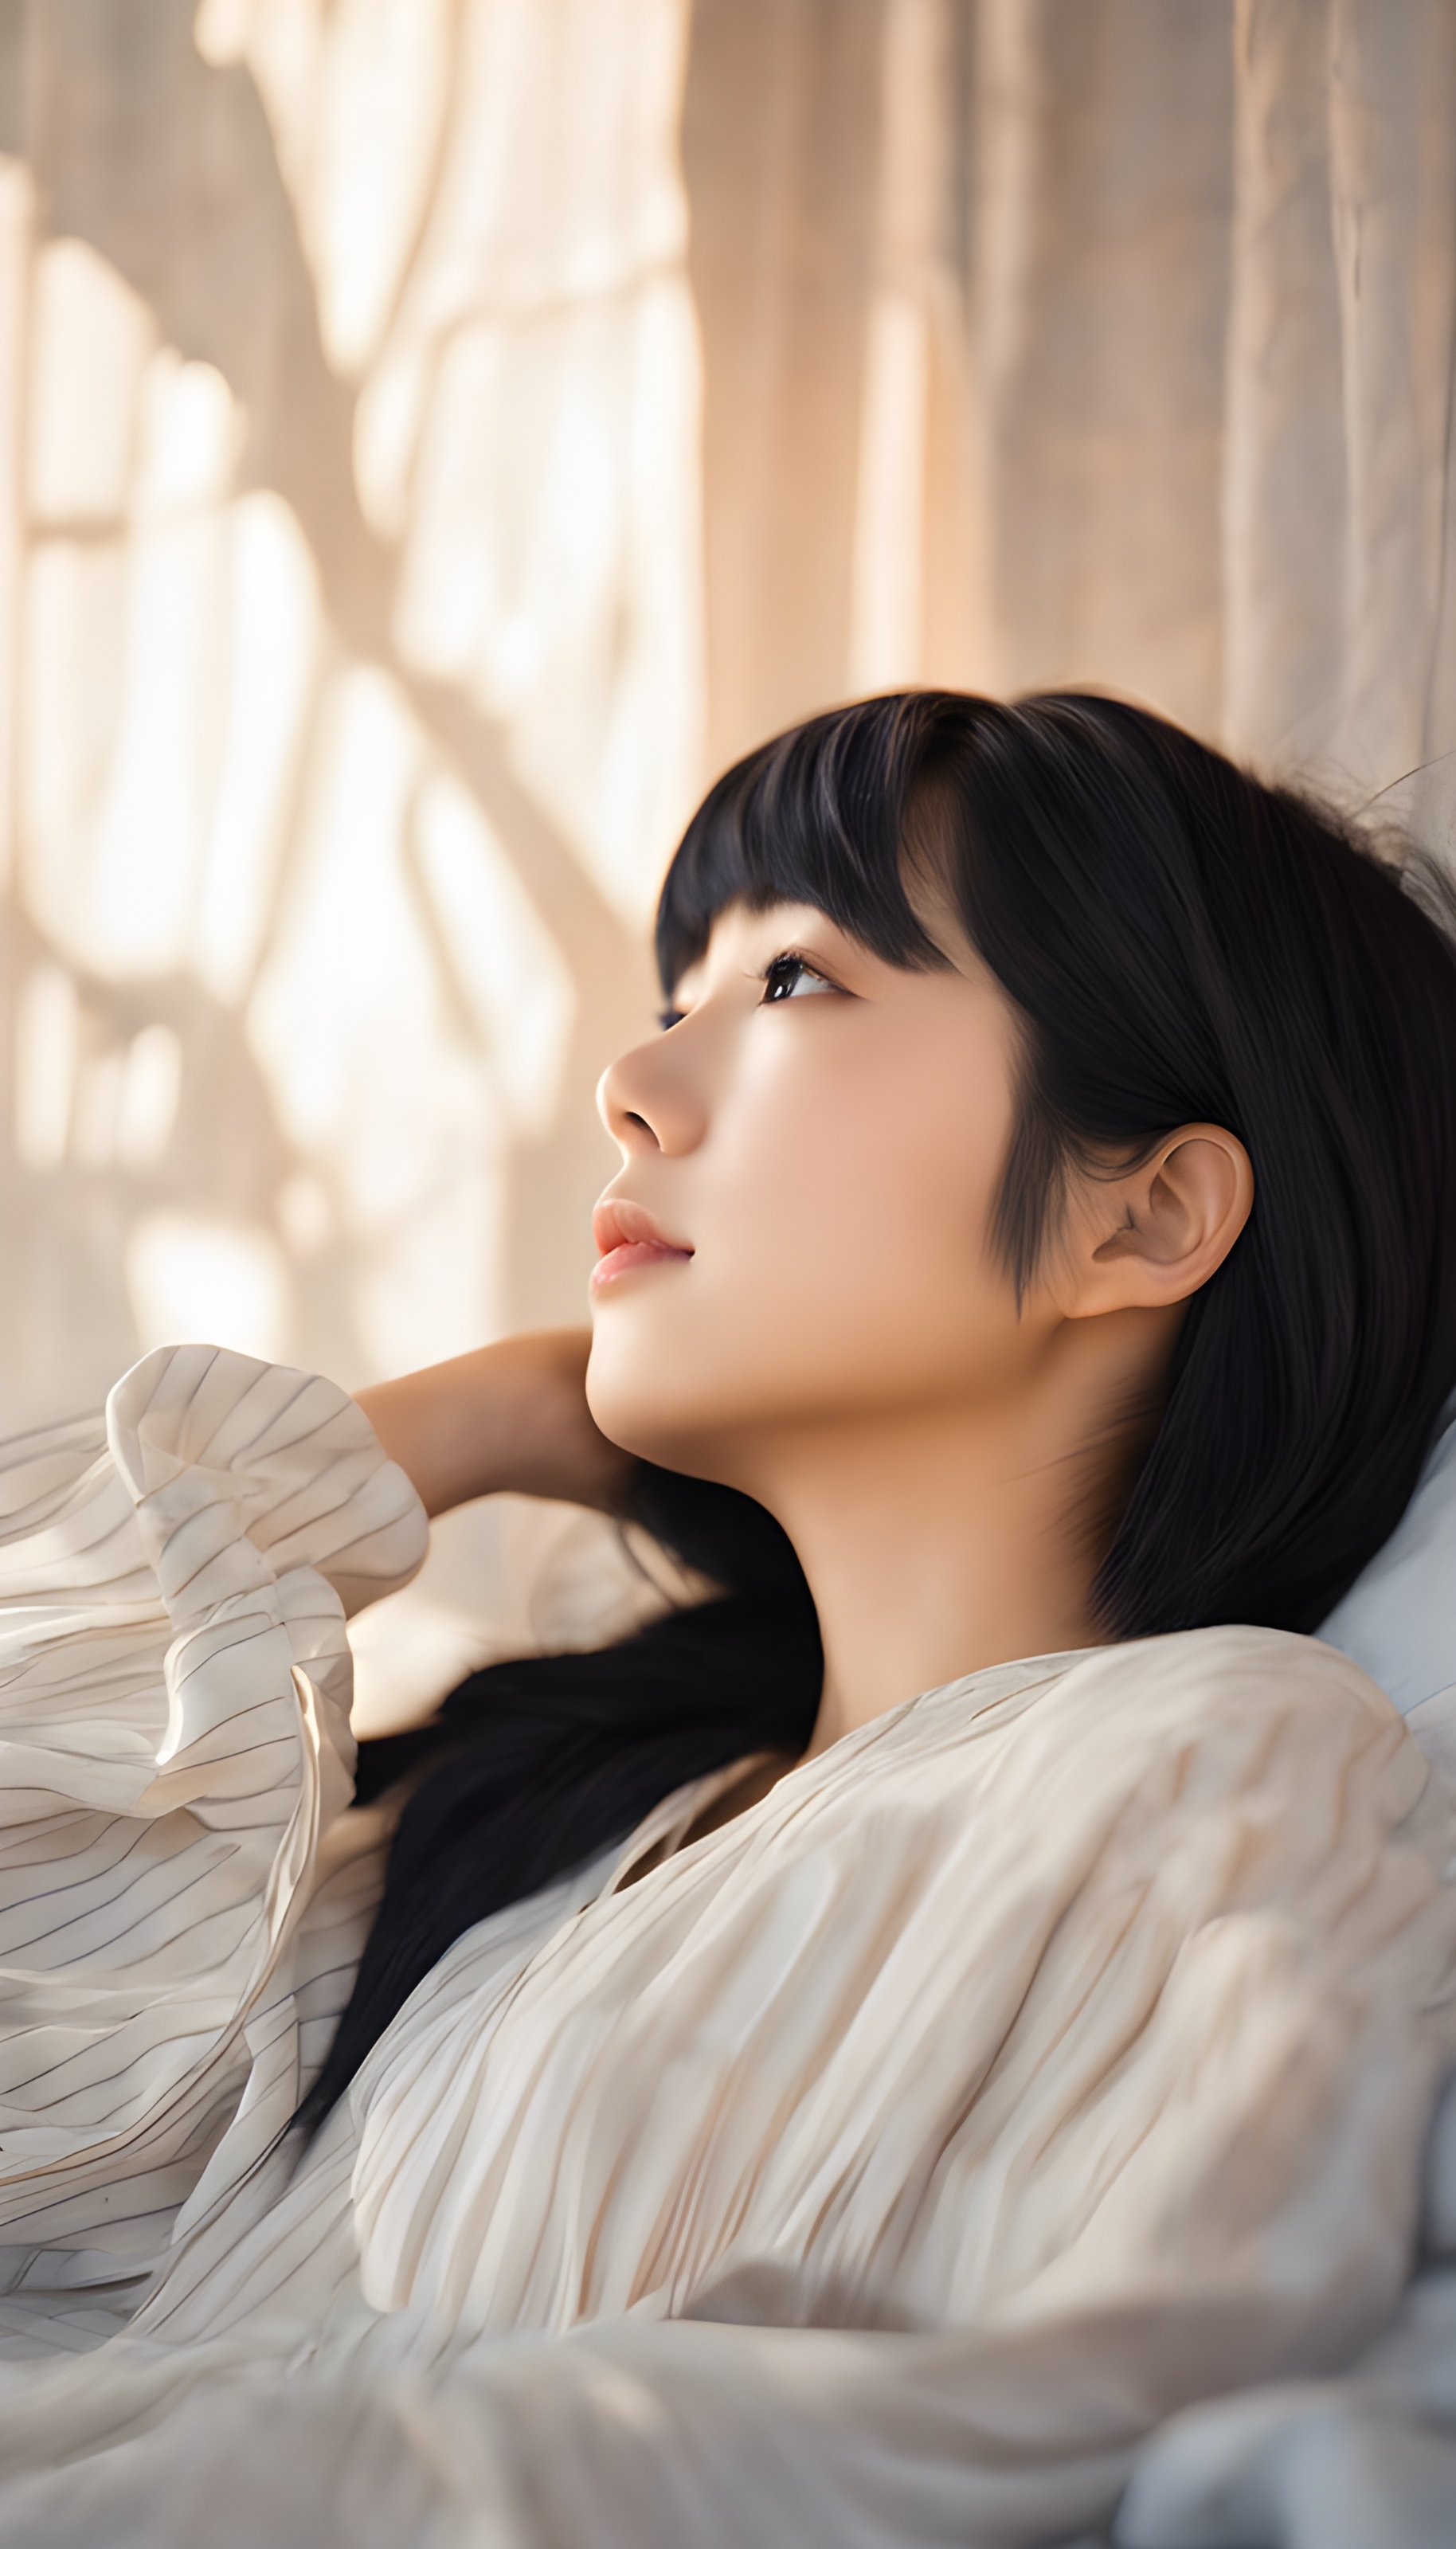 ภาพถ่ายผู้หญิงญี่ปุ่นสาวสวยอายุ 19 ปี ผมดำสั้น นอนอยู่บนเตียง สีหน้ามีความสุข --wh 9:16